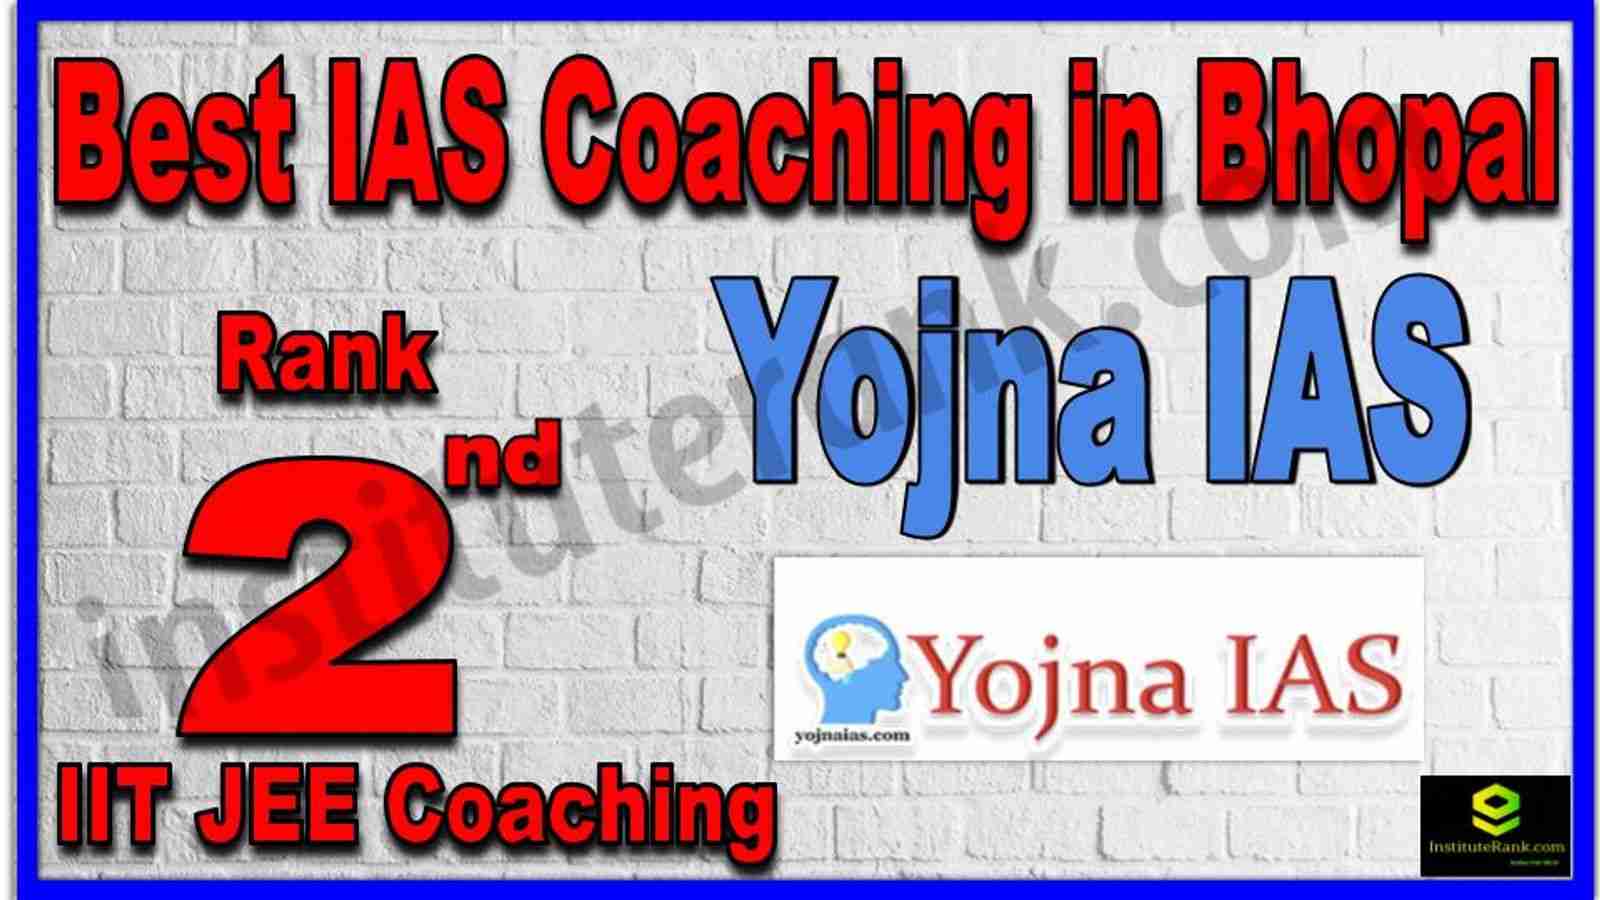 Rank 2nd Best IAS Coaching in Bhopal